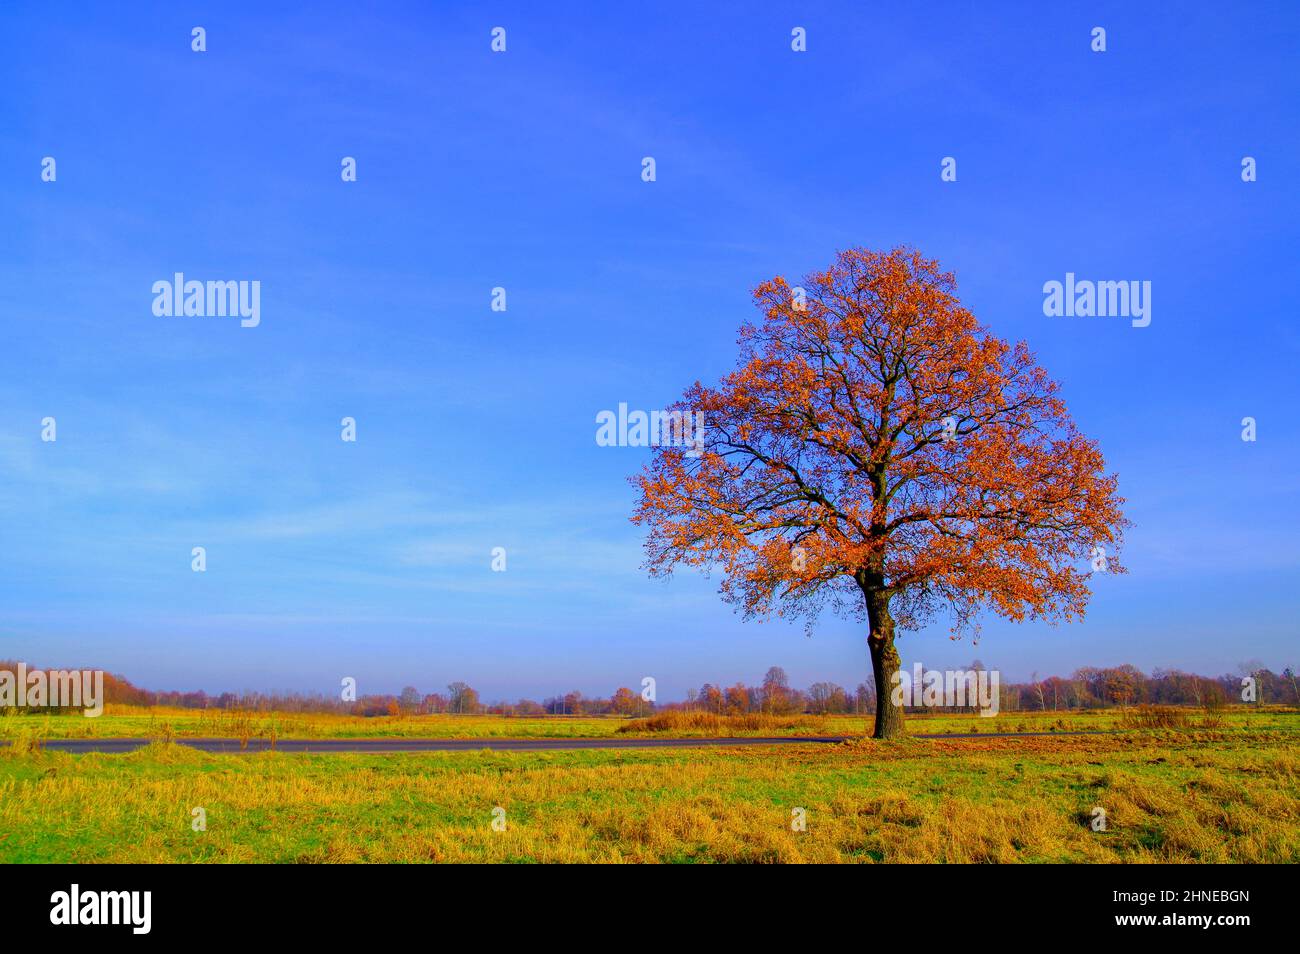 Einsame Eiche im Herbst gegen einen blauen Himmel. Die Blätter sind braun gefärbt. Stockfoto